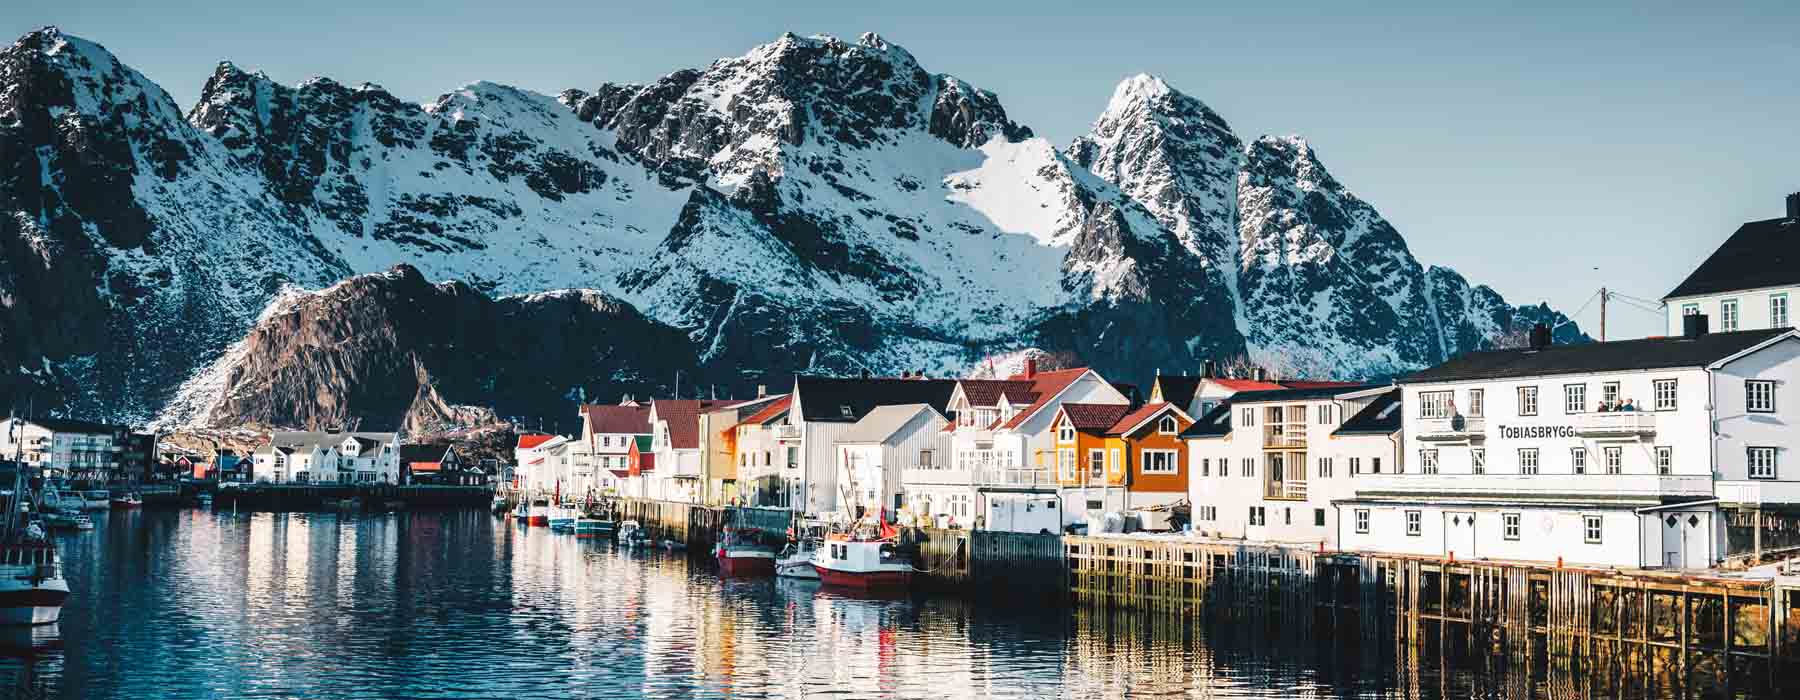 Norway<br class="hidden-md hidden-lg" /> February Holidays